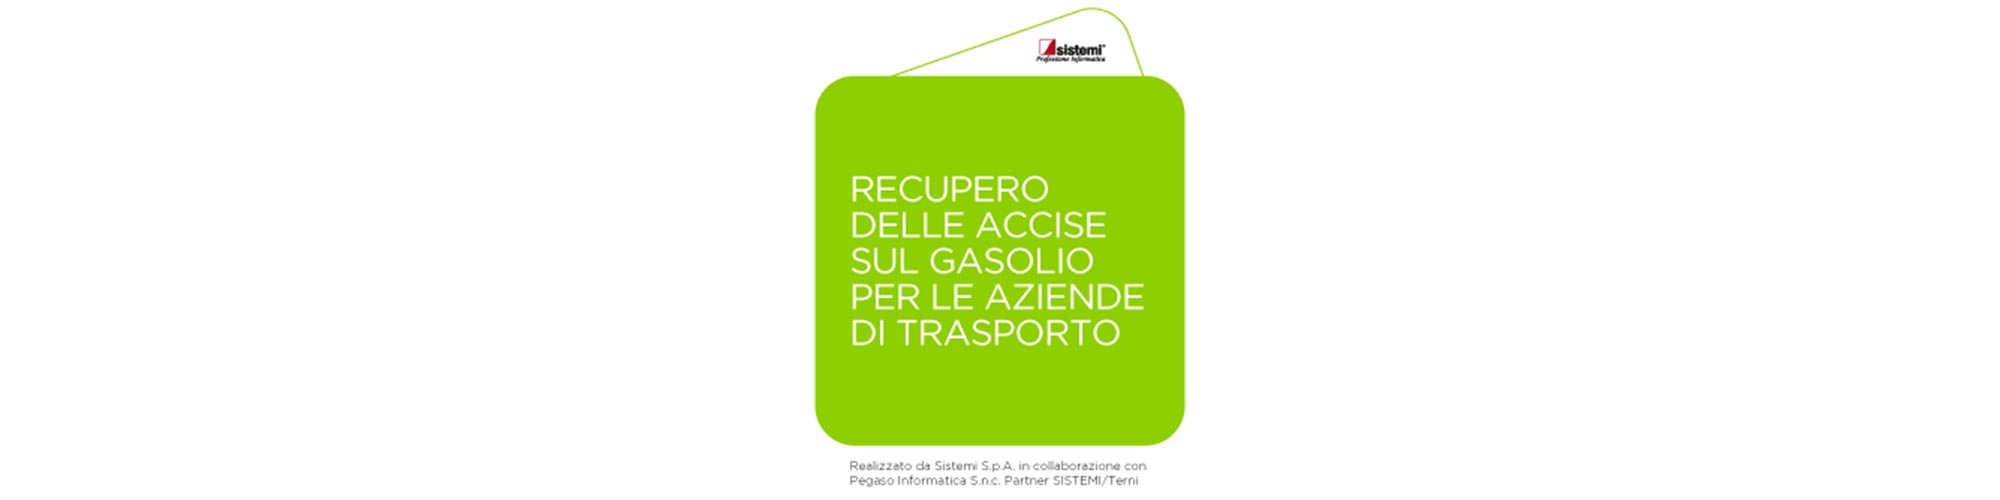 https://www.pegainf.com/notizie/recupero-delle-accise-sul-gasolio-per-le-aziende-di-trasporto